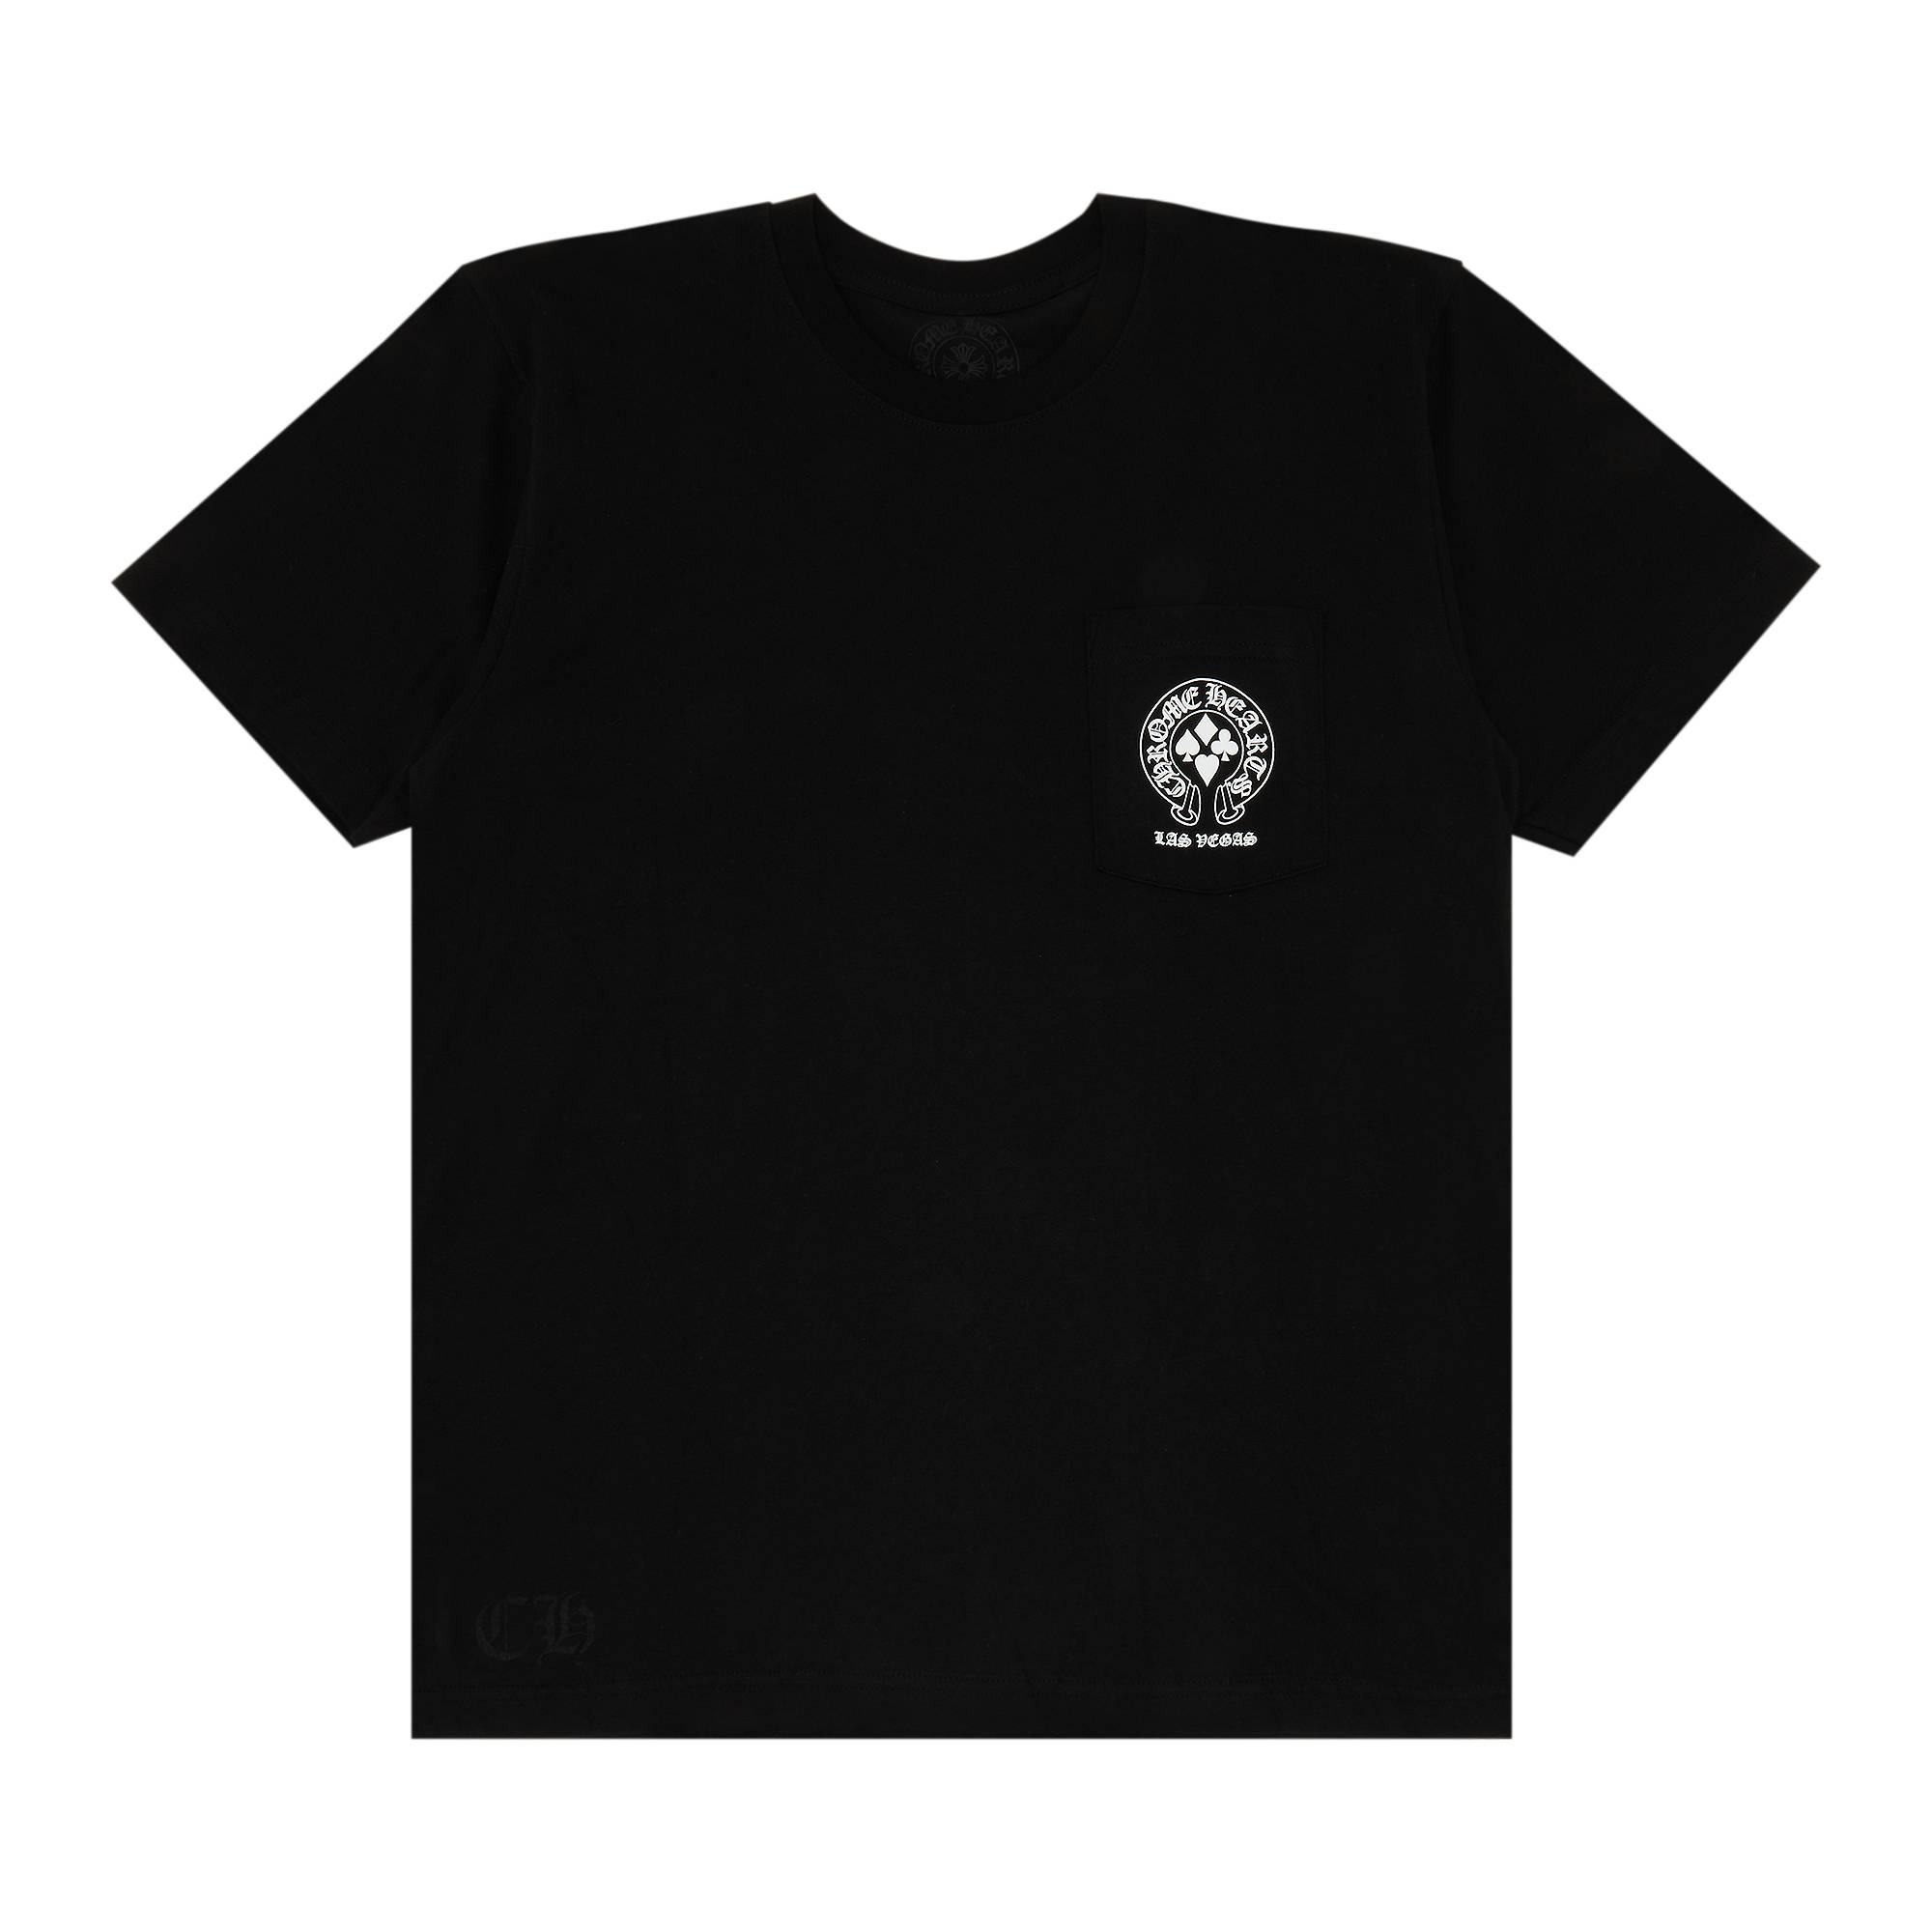 Chrome Hearts Las Vegas Exclusive T-Shirt 'Black' - 1